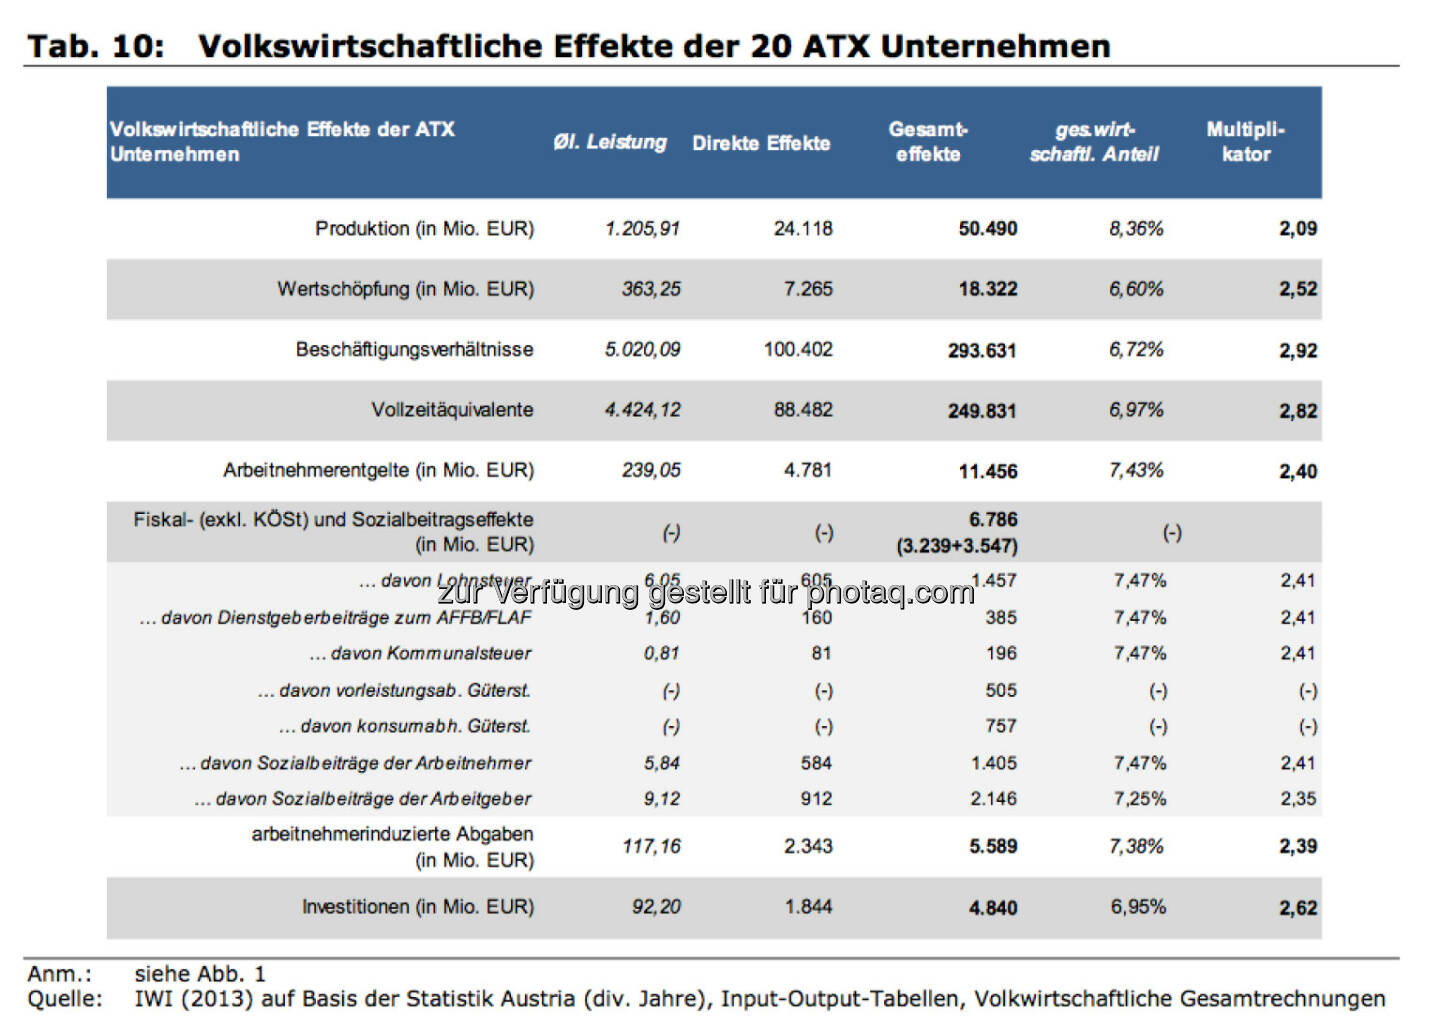 Volkswirtschaftliche Effekte der 20 ATX Unternehmen